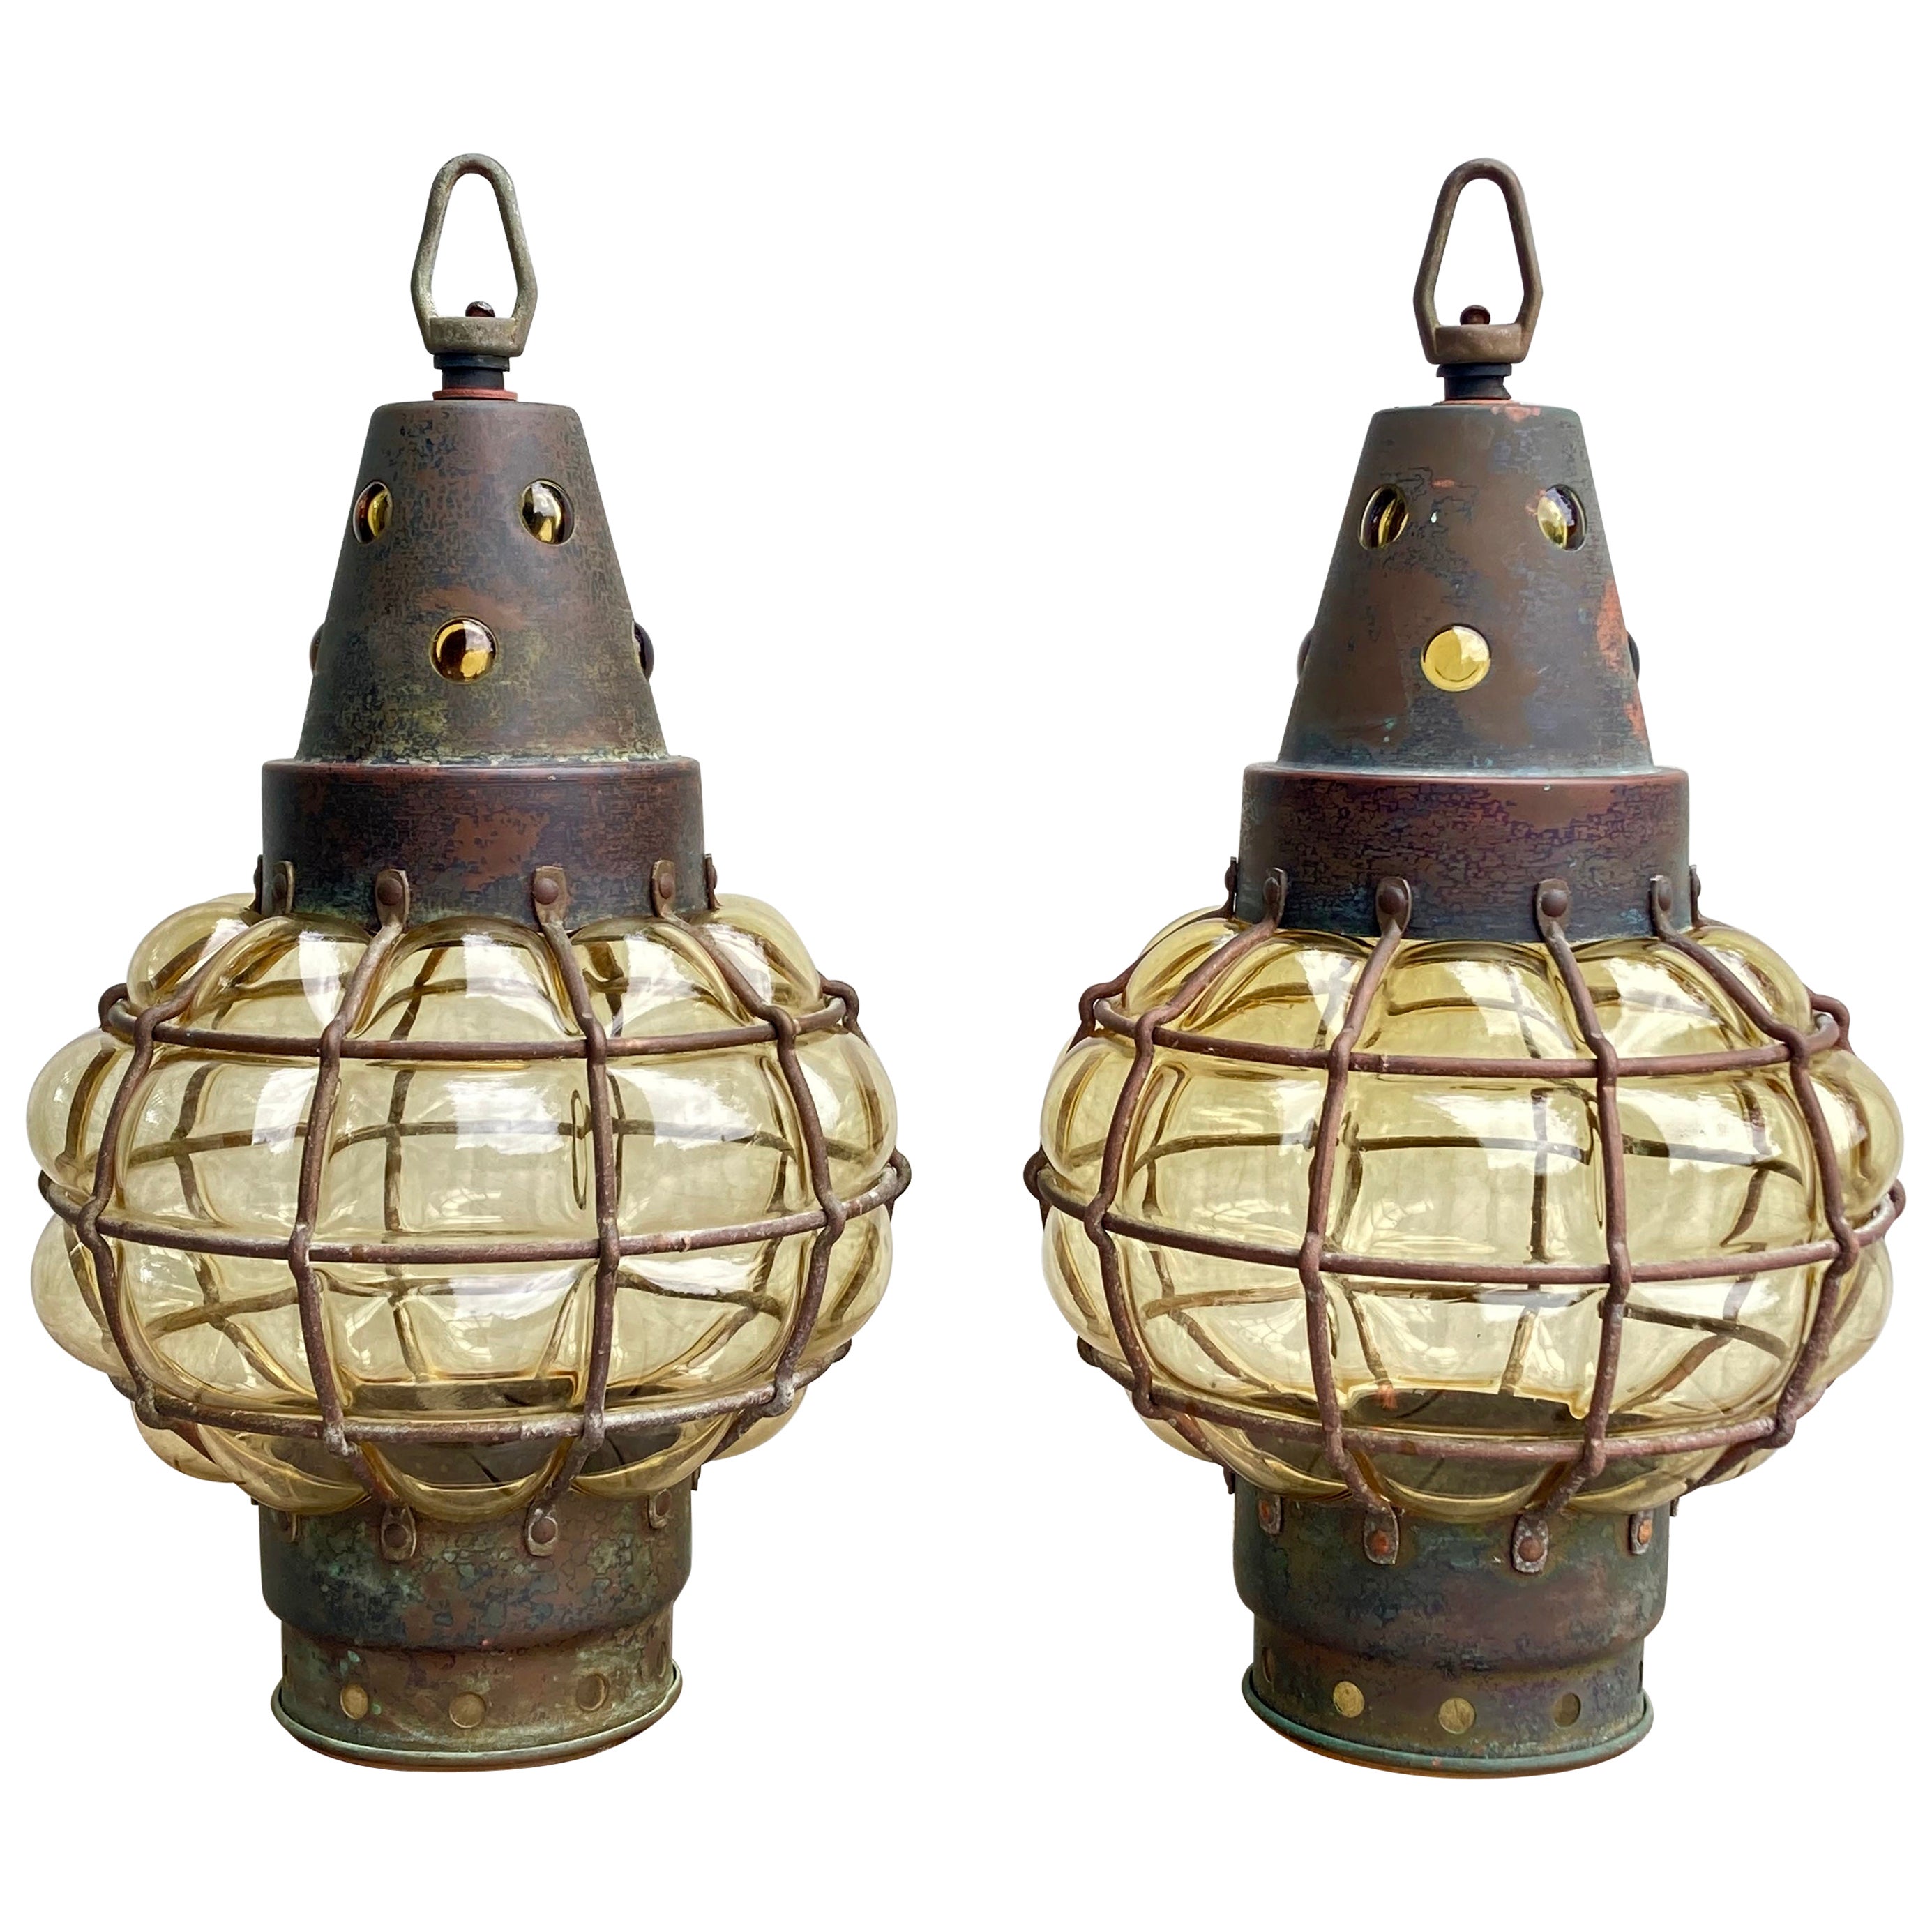 Paire de lanternes suspendues Arts & Crafts anciennes des années 1920 en métal et verre fait main